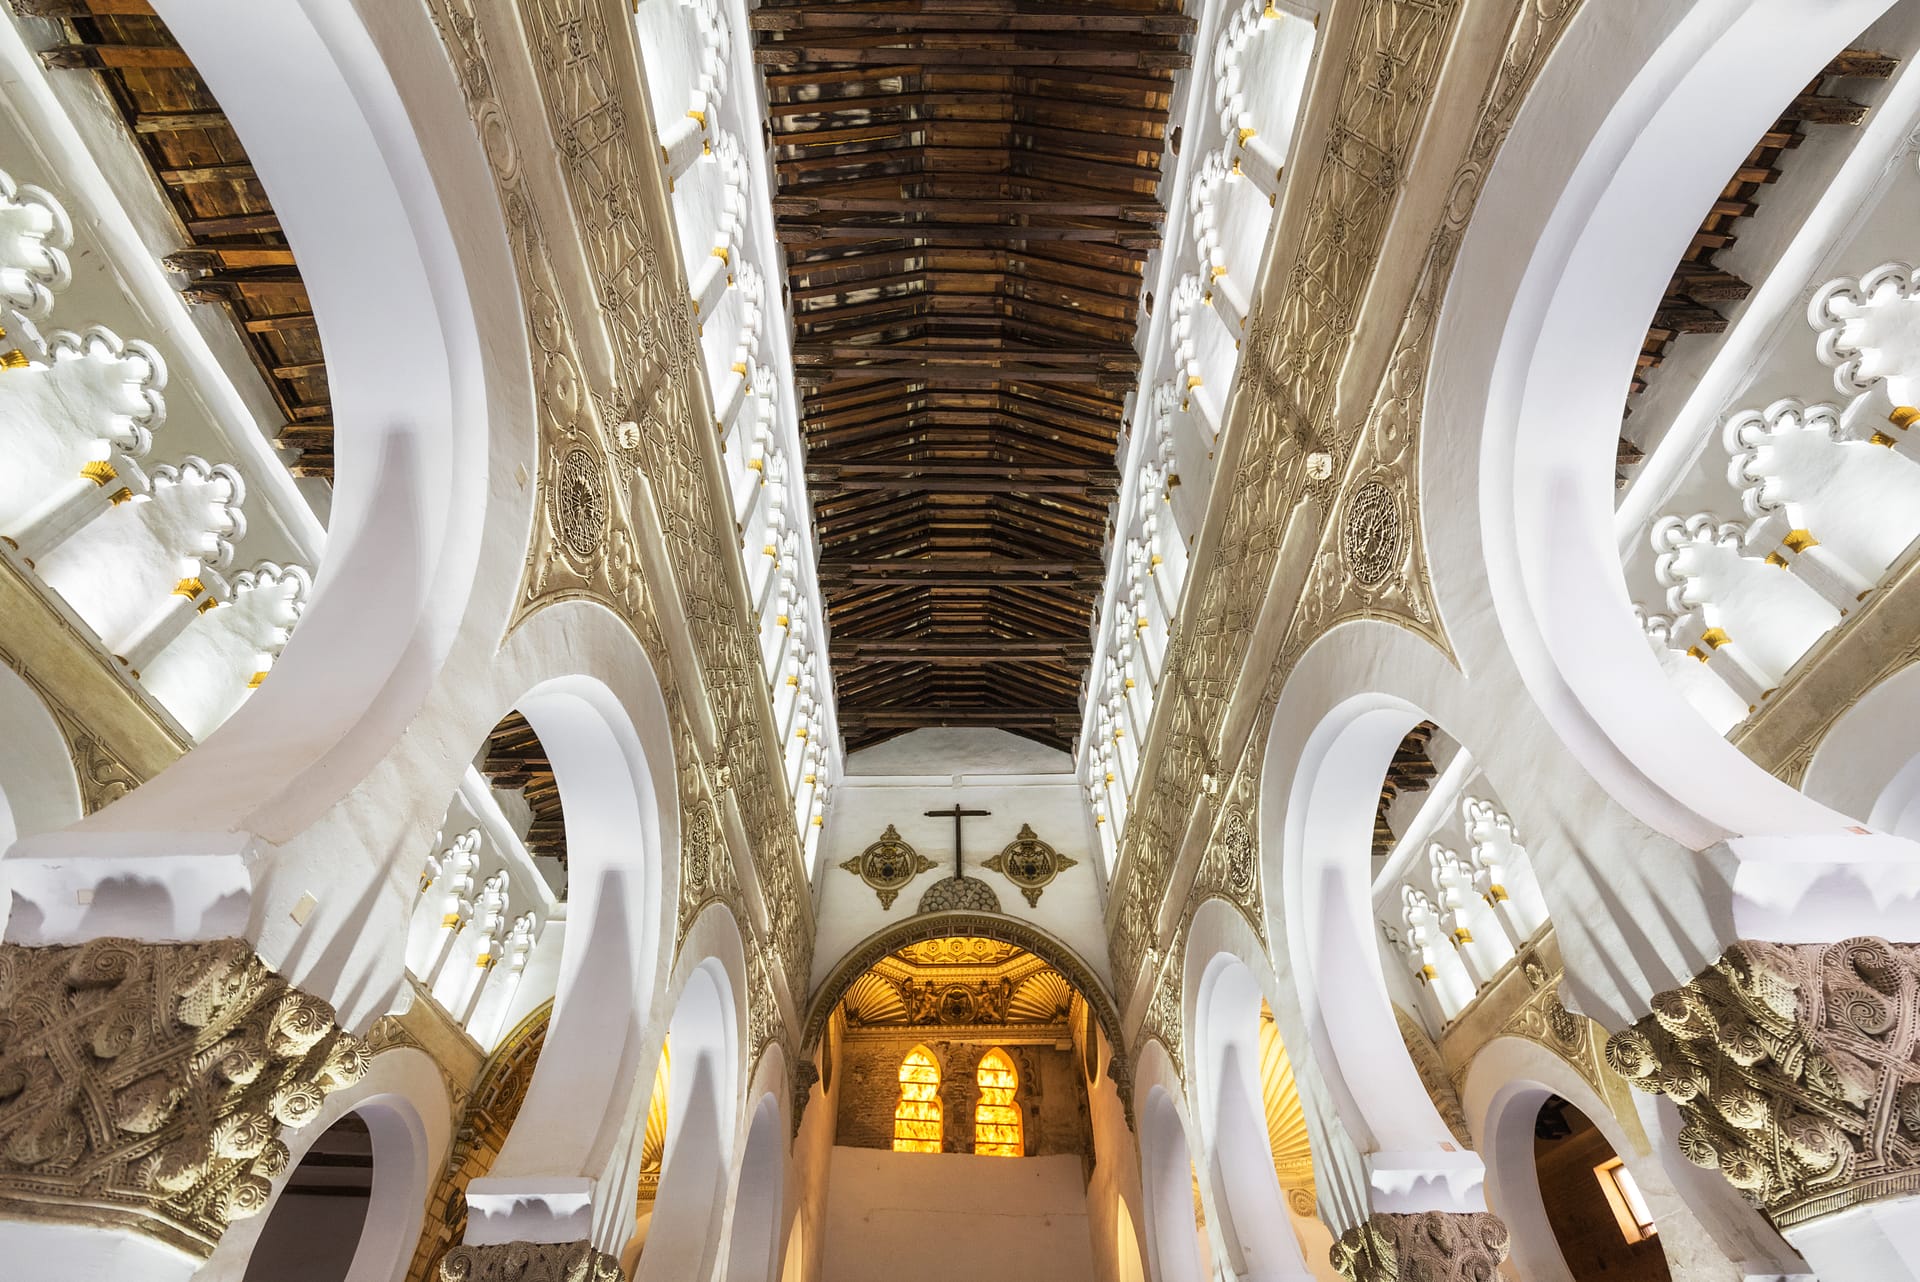 Toledo, Spain - Interior Synagogue of Santa Maria la Blanca in Toledo, Spain.